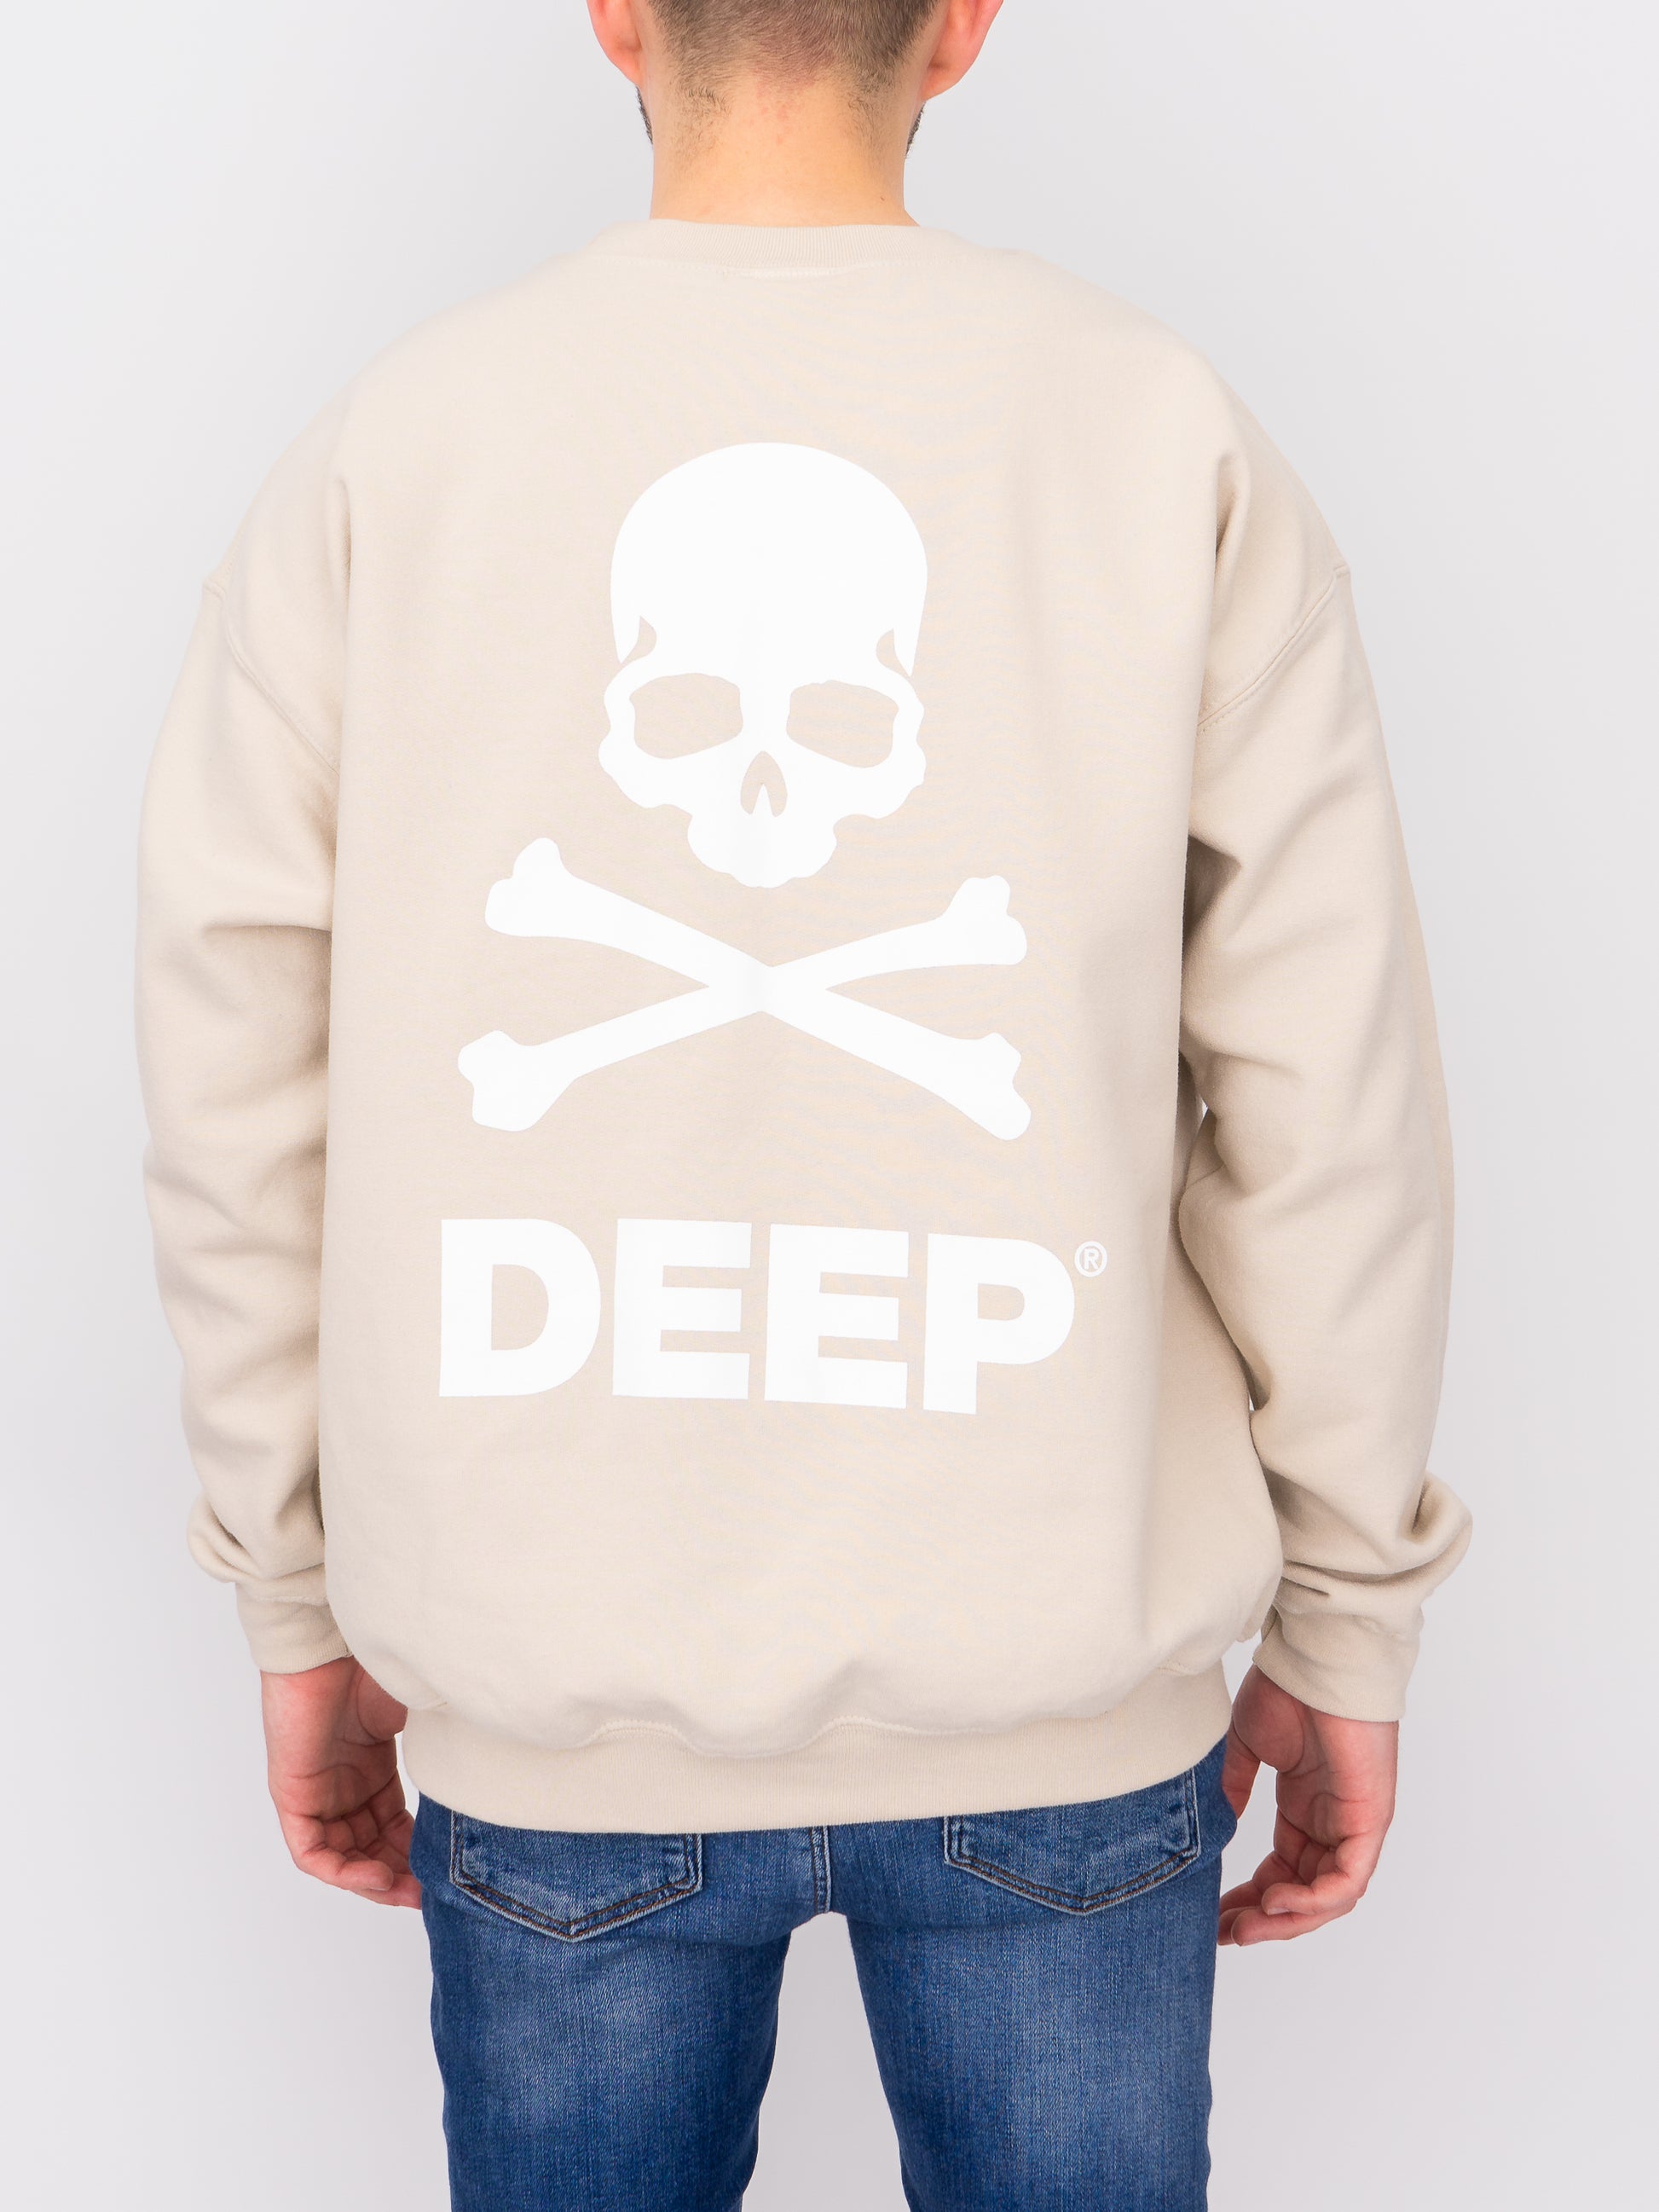 Crossbones Crew Neck Sweatshirt - Sand - DEEP Clothing